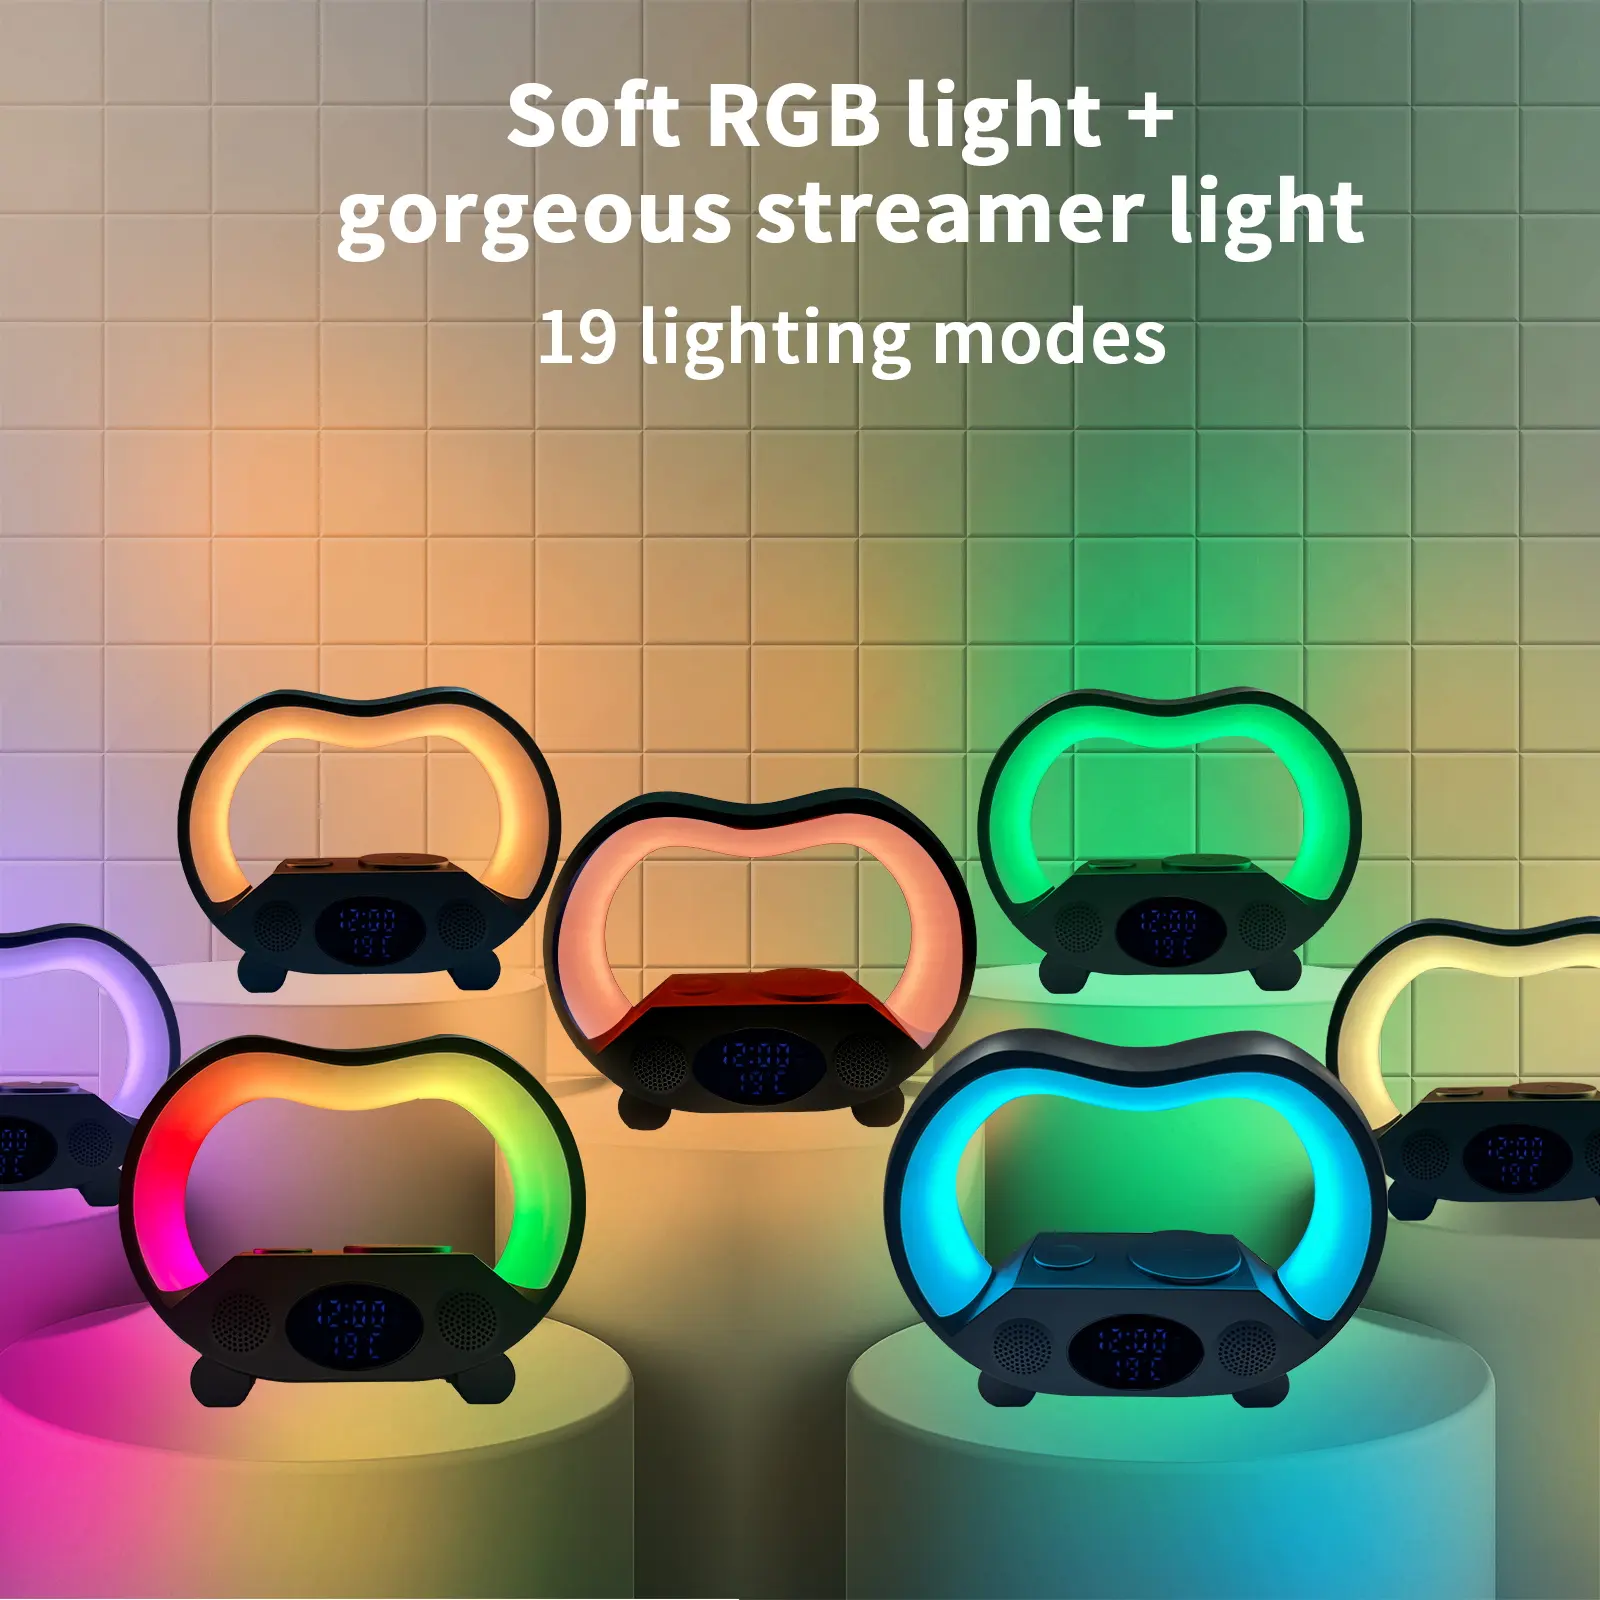 램프 스피커 G 모양의 무선 충전기 G 스피커 LED 램프 침대 옆 조명 야간 RGB 알람 시계 램프 무선 충전기 스피커